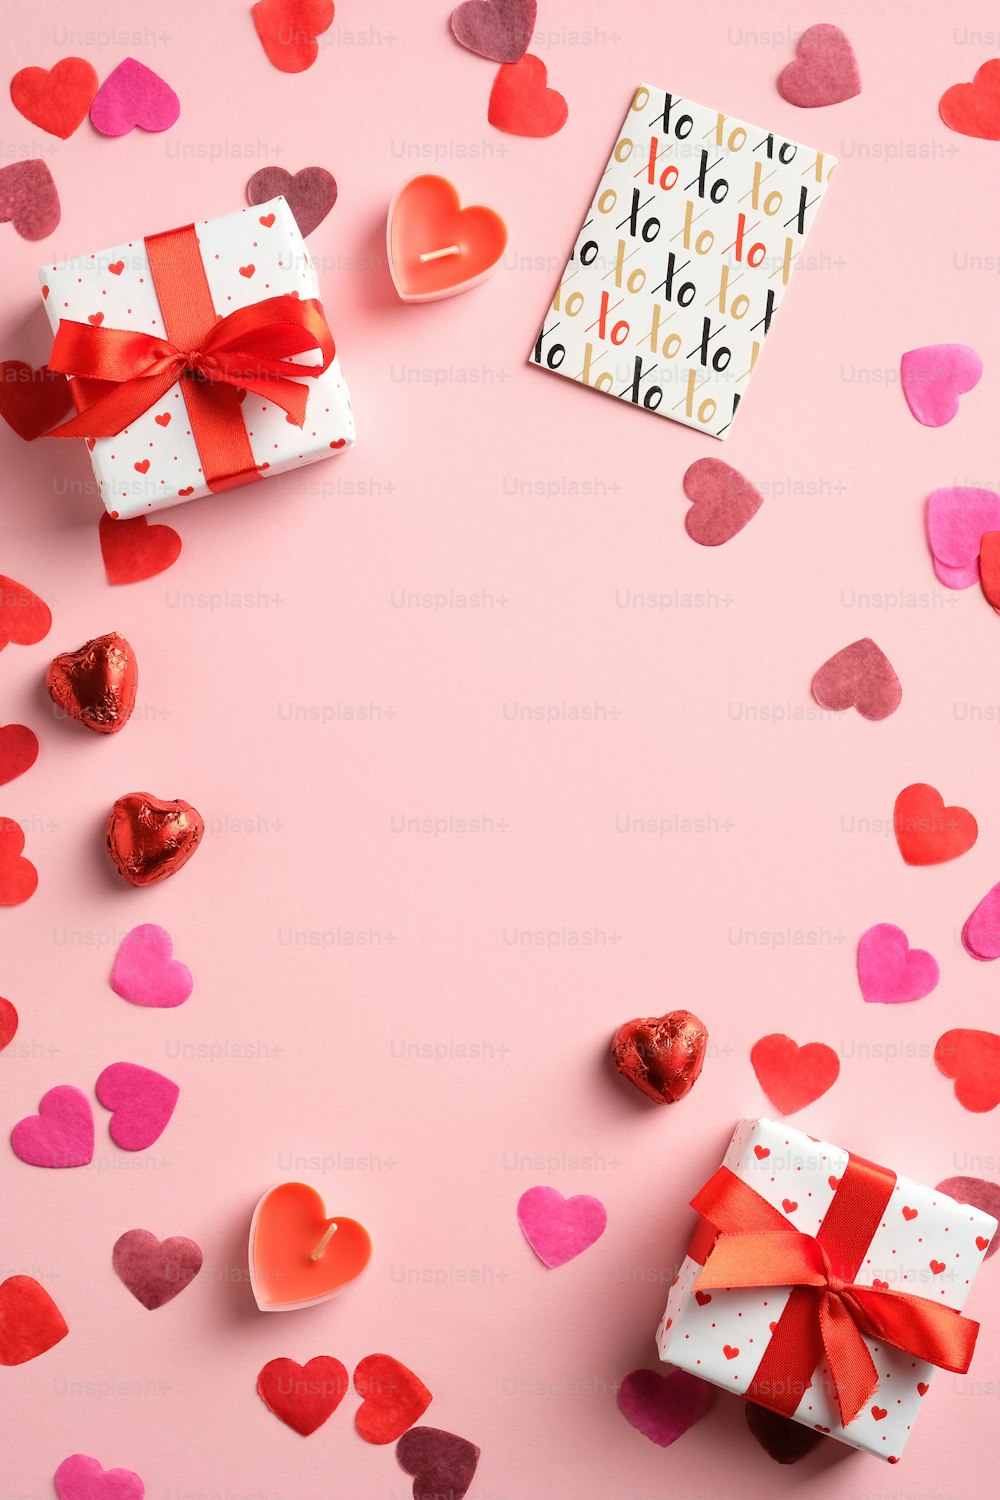 Valentinstag flache Laienkomposition. Draufsicht Rahmen von Herzen, Geschenkboxen, Papierkarte auf rosa Hintergrund. Geeignet für Flyer, Broschüre, Geschichten in sozialen Medien